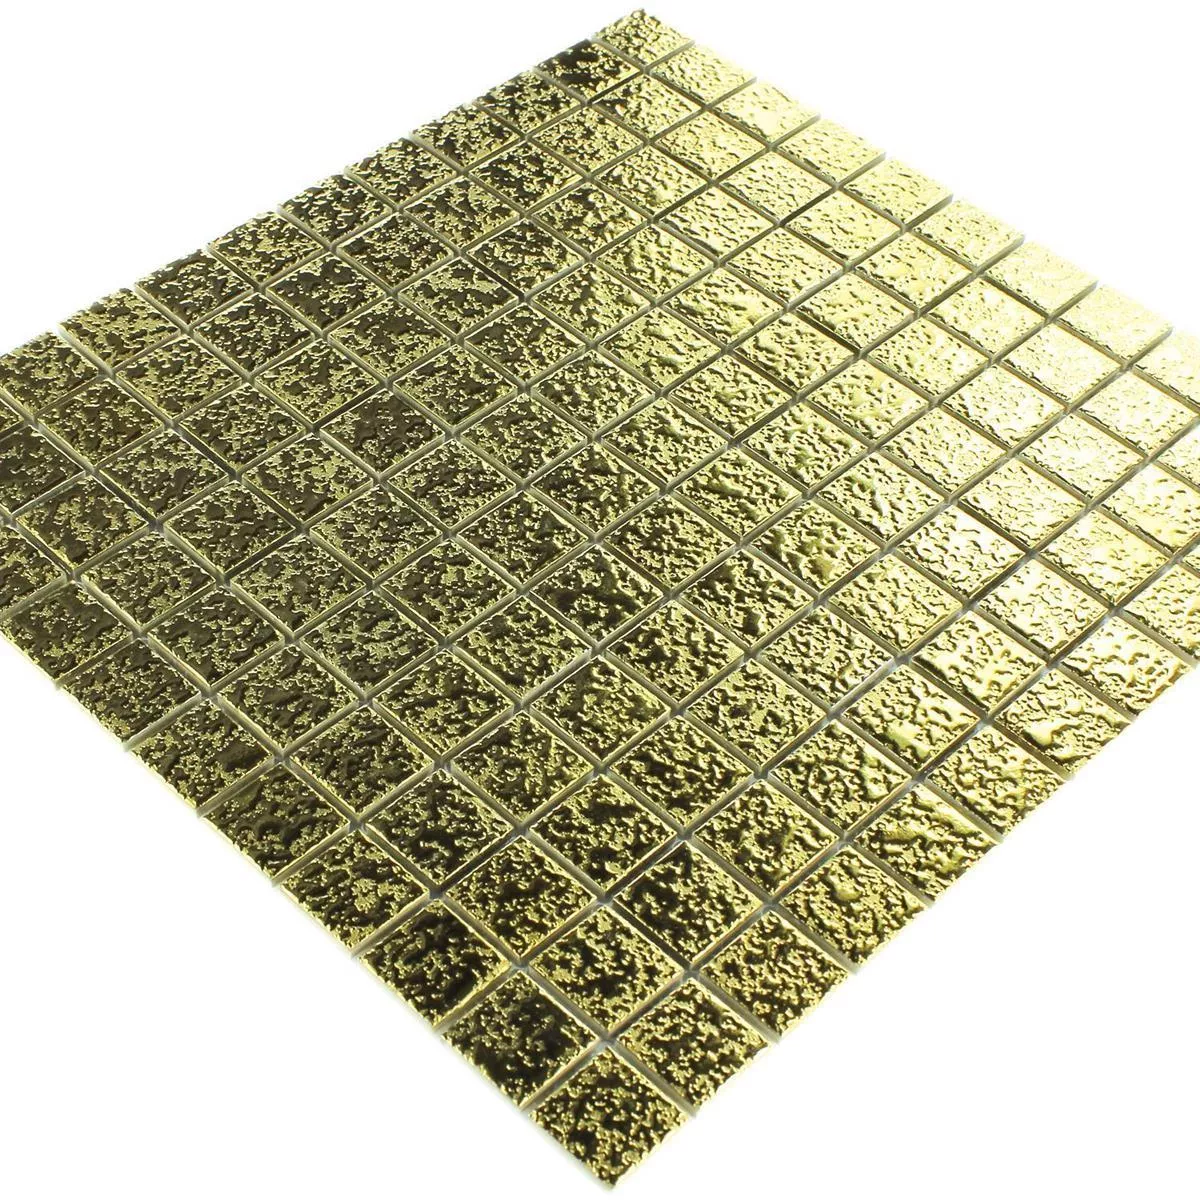 Sample Mosaic Tiles Ceramic Sherbrooke Gold Beaten